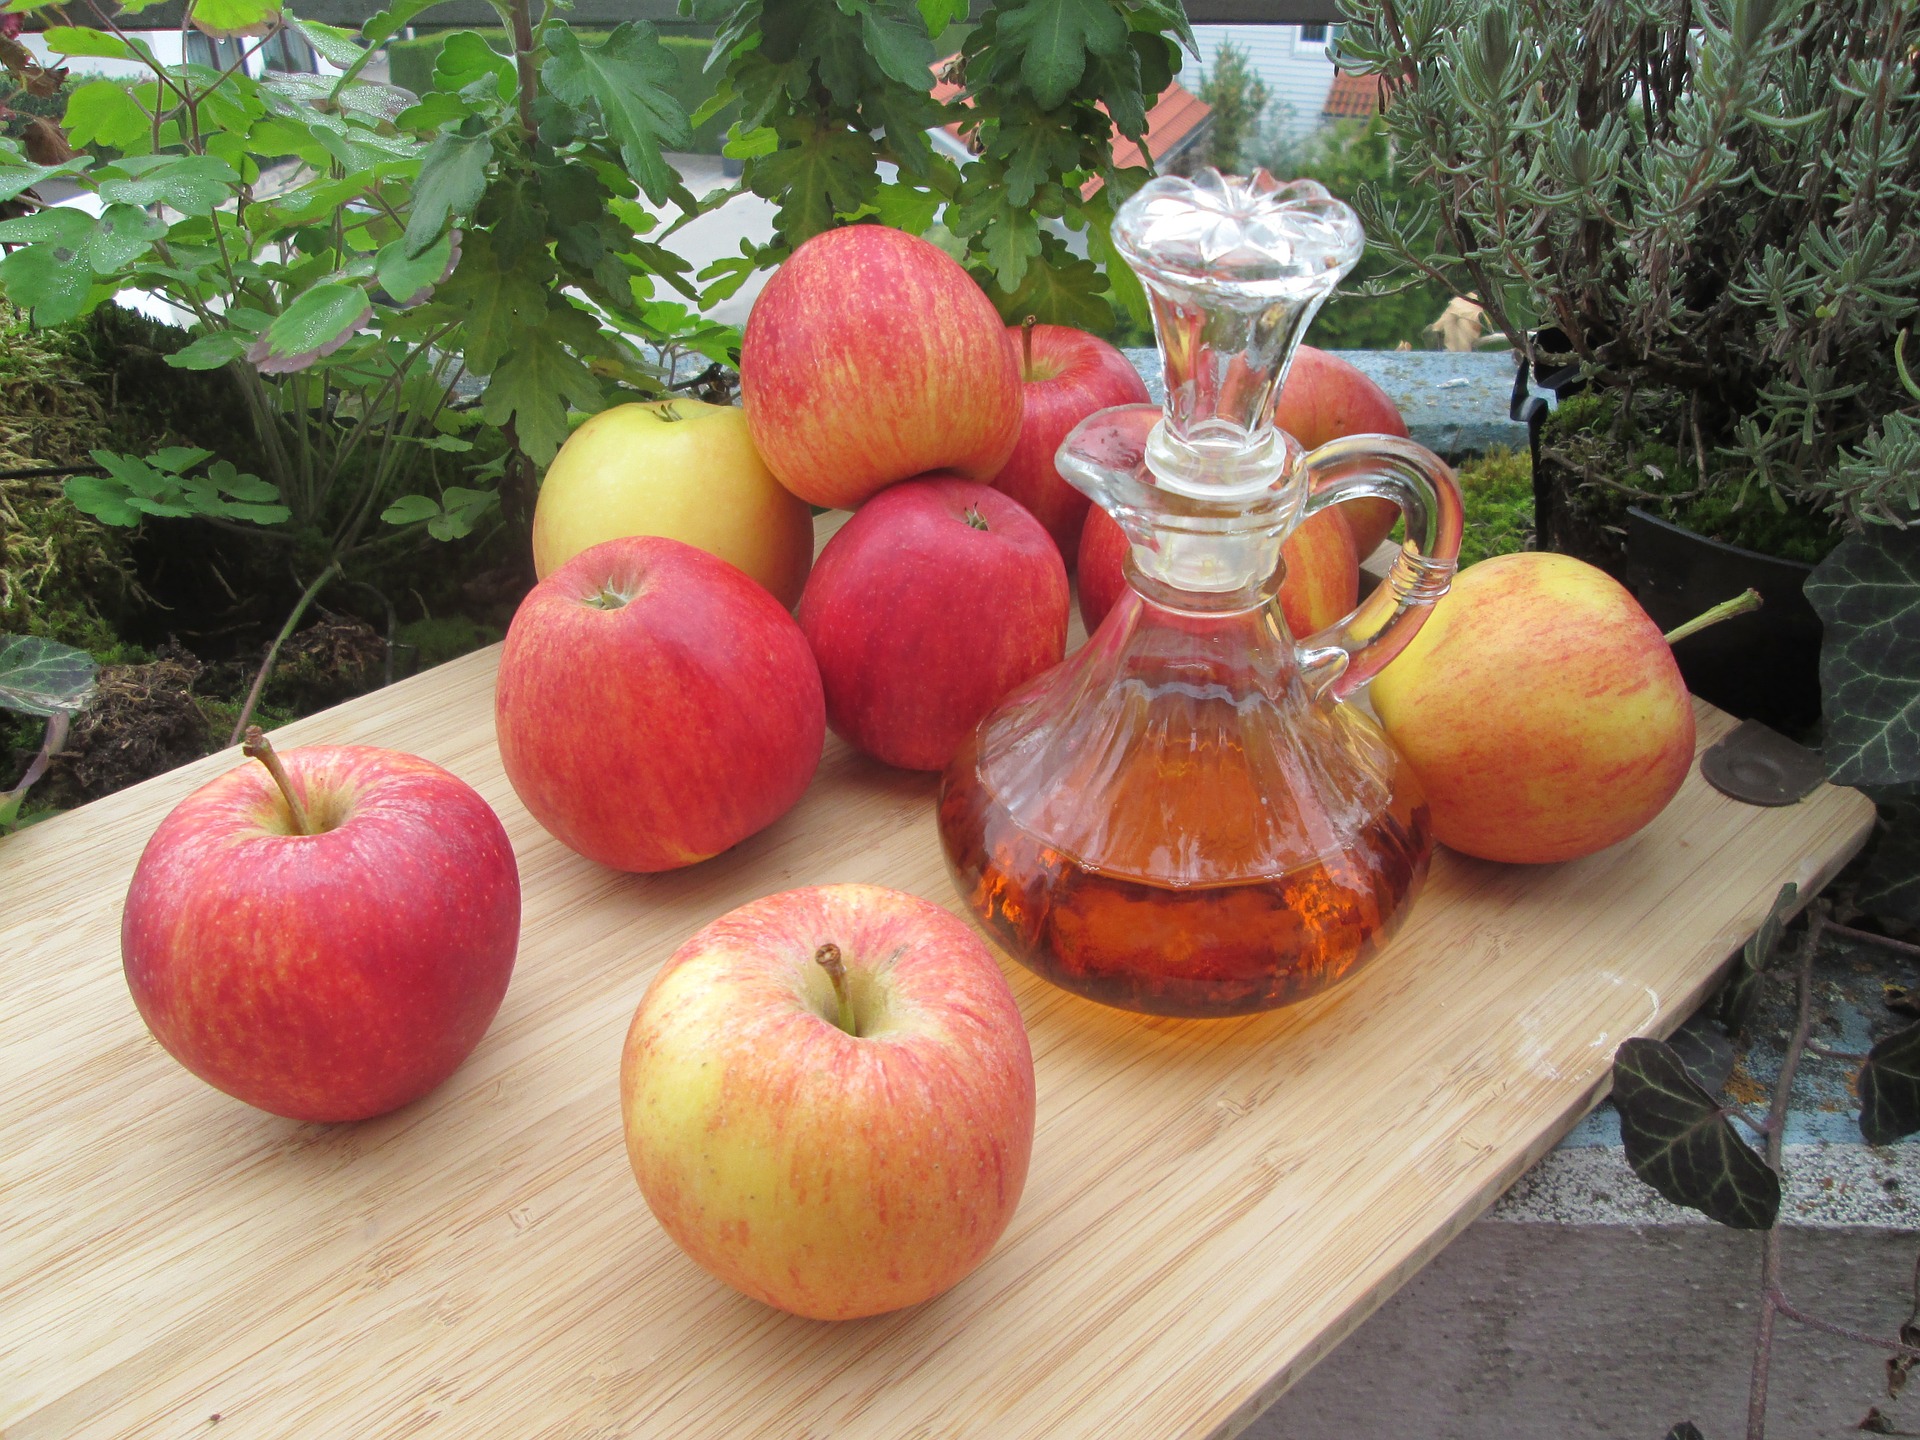 Jablečný ocet má prokazatelné účinky na hubnutí / zdroj: pixabay.com